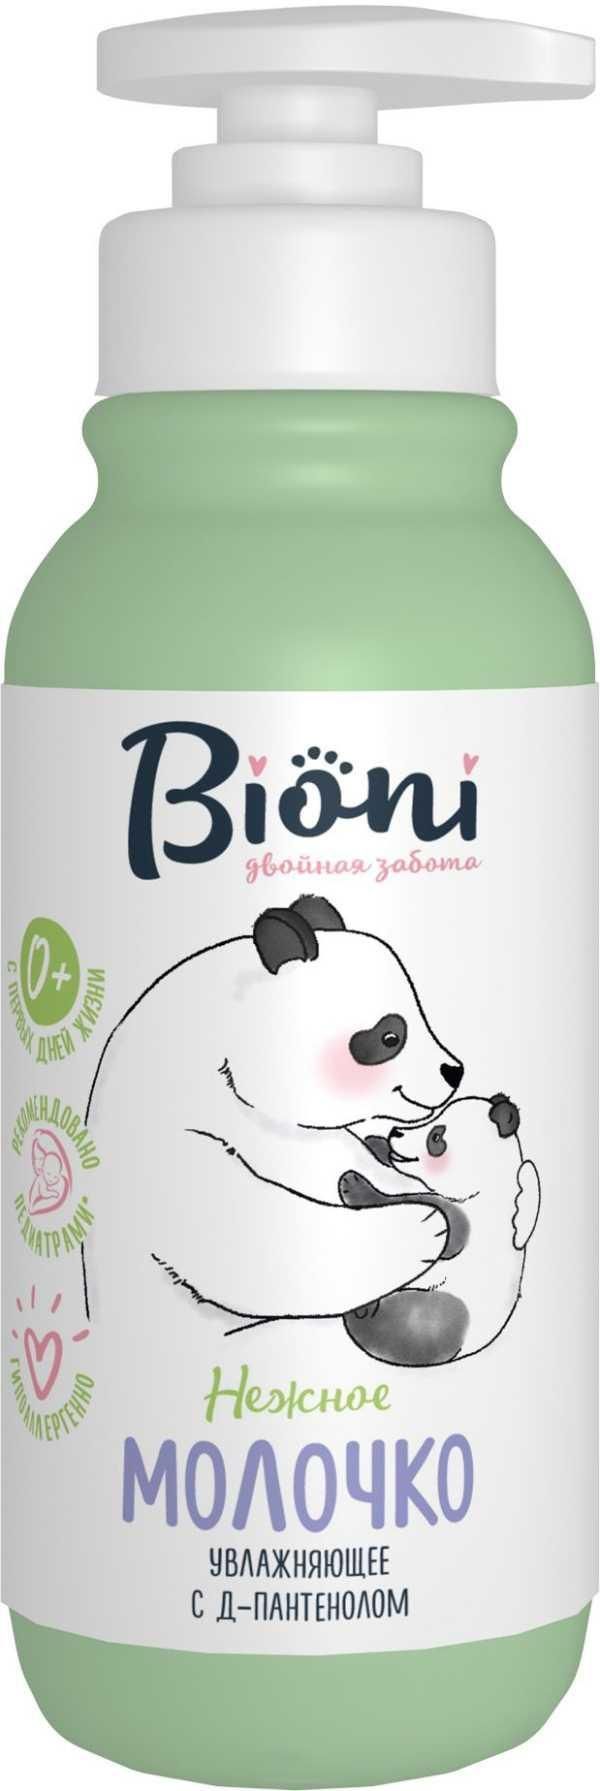 фото упаковки Bioni Детское увлажняющее молочко